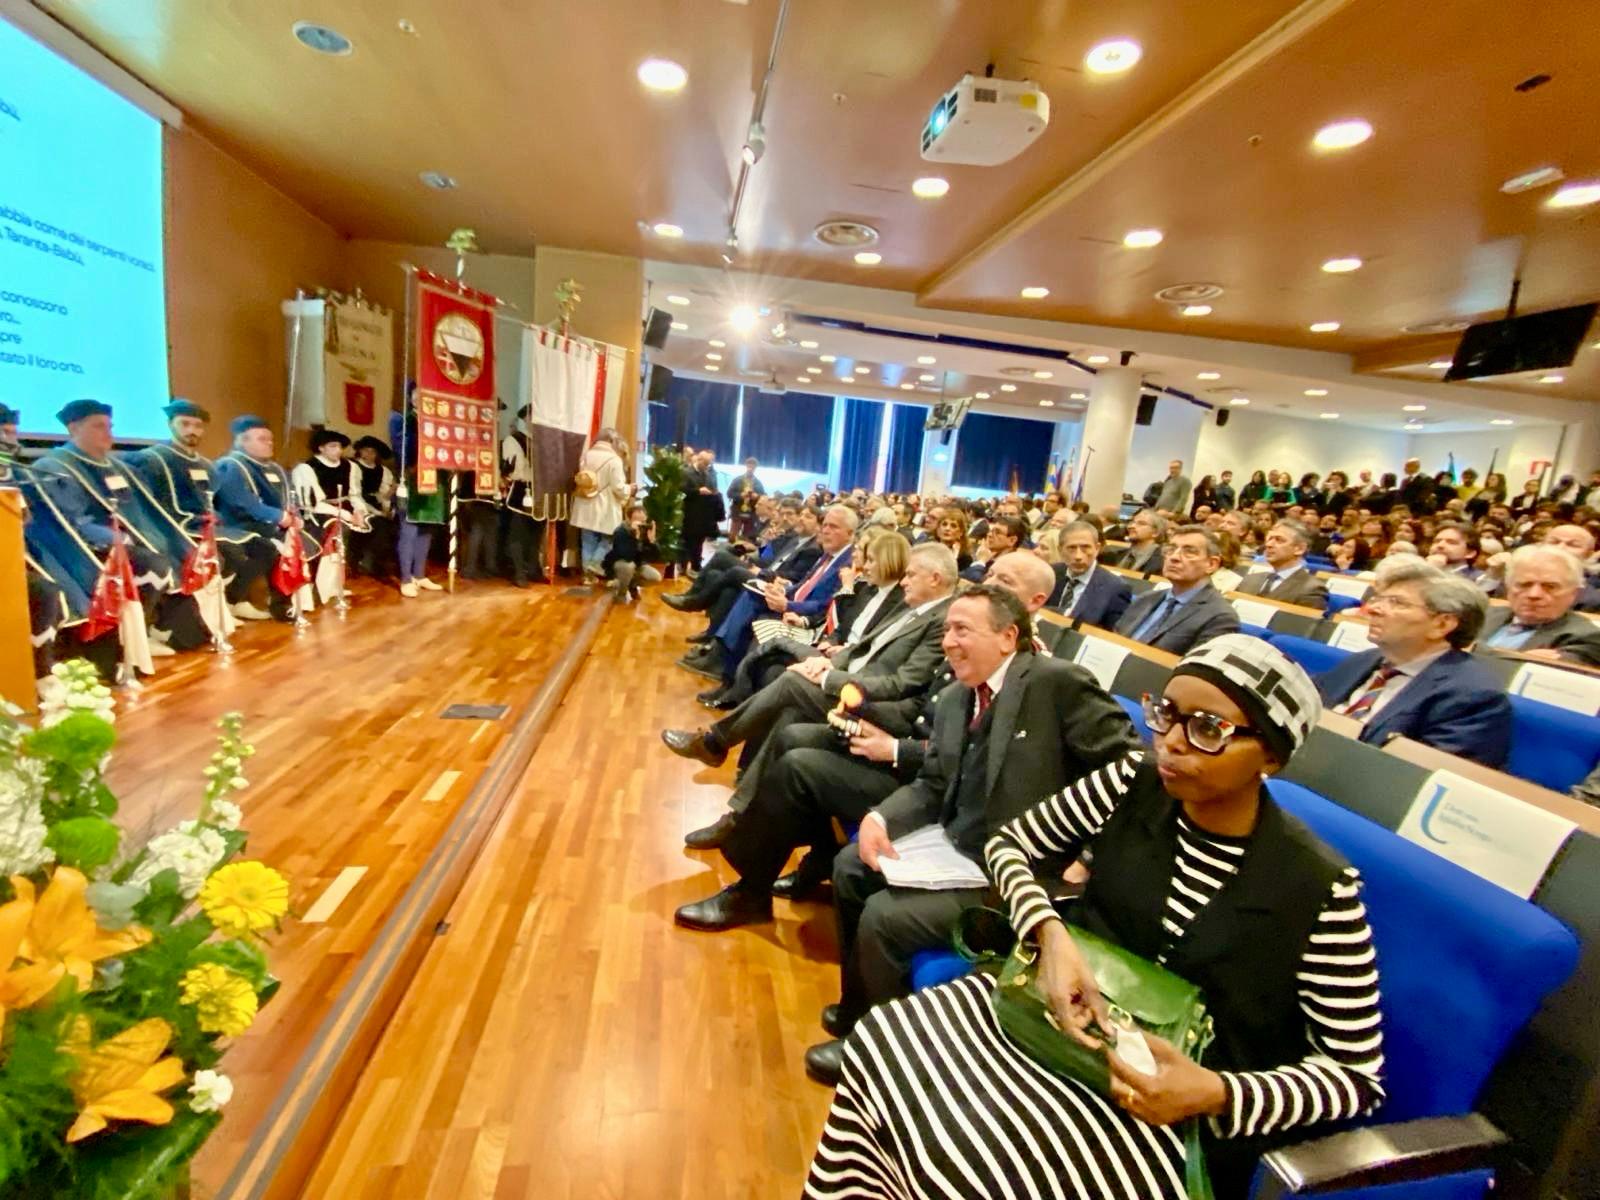 Unistrasi, Giani all’inaugurazione dell’anno accademico: “Luogo di incontro e di pace”